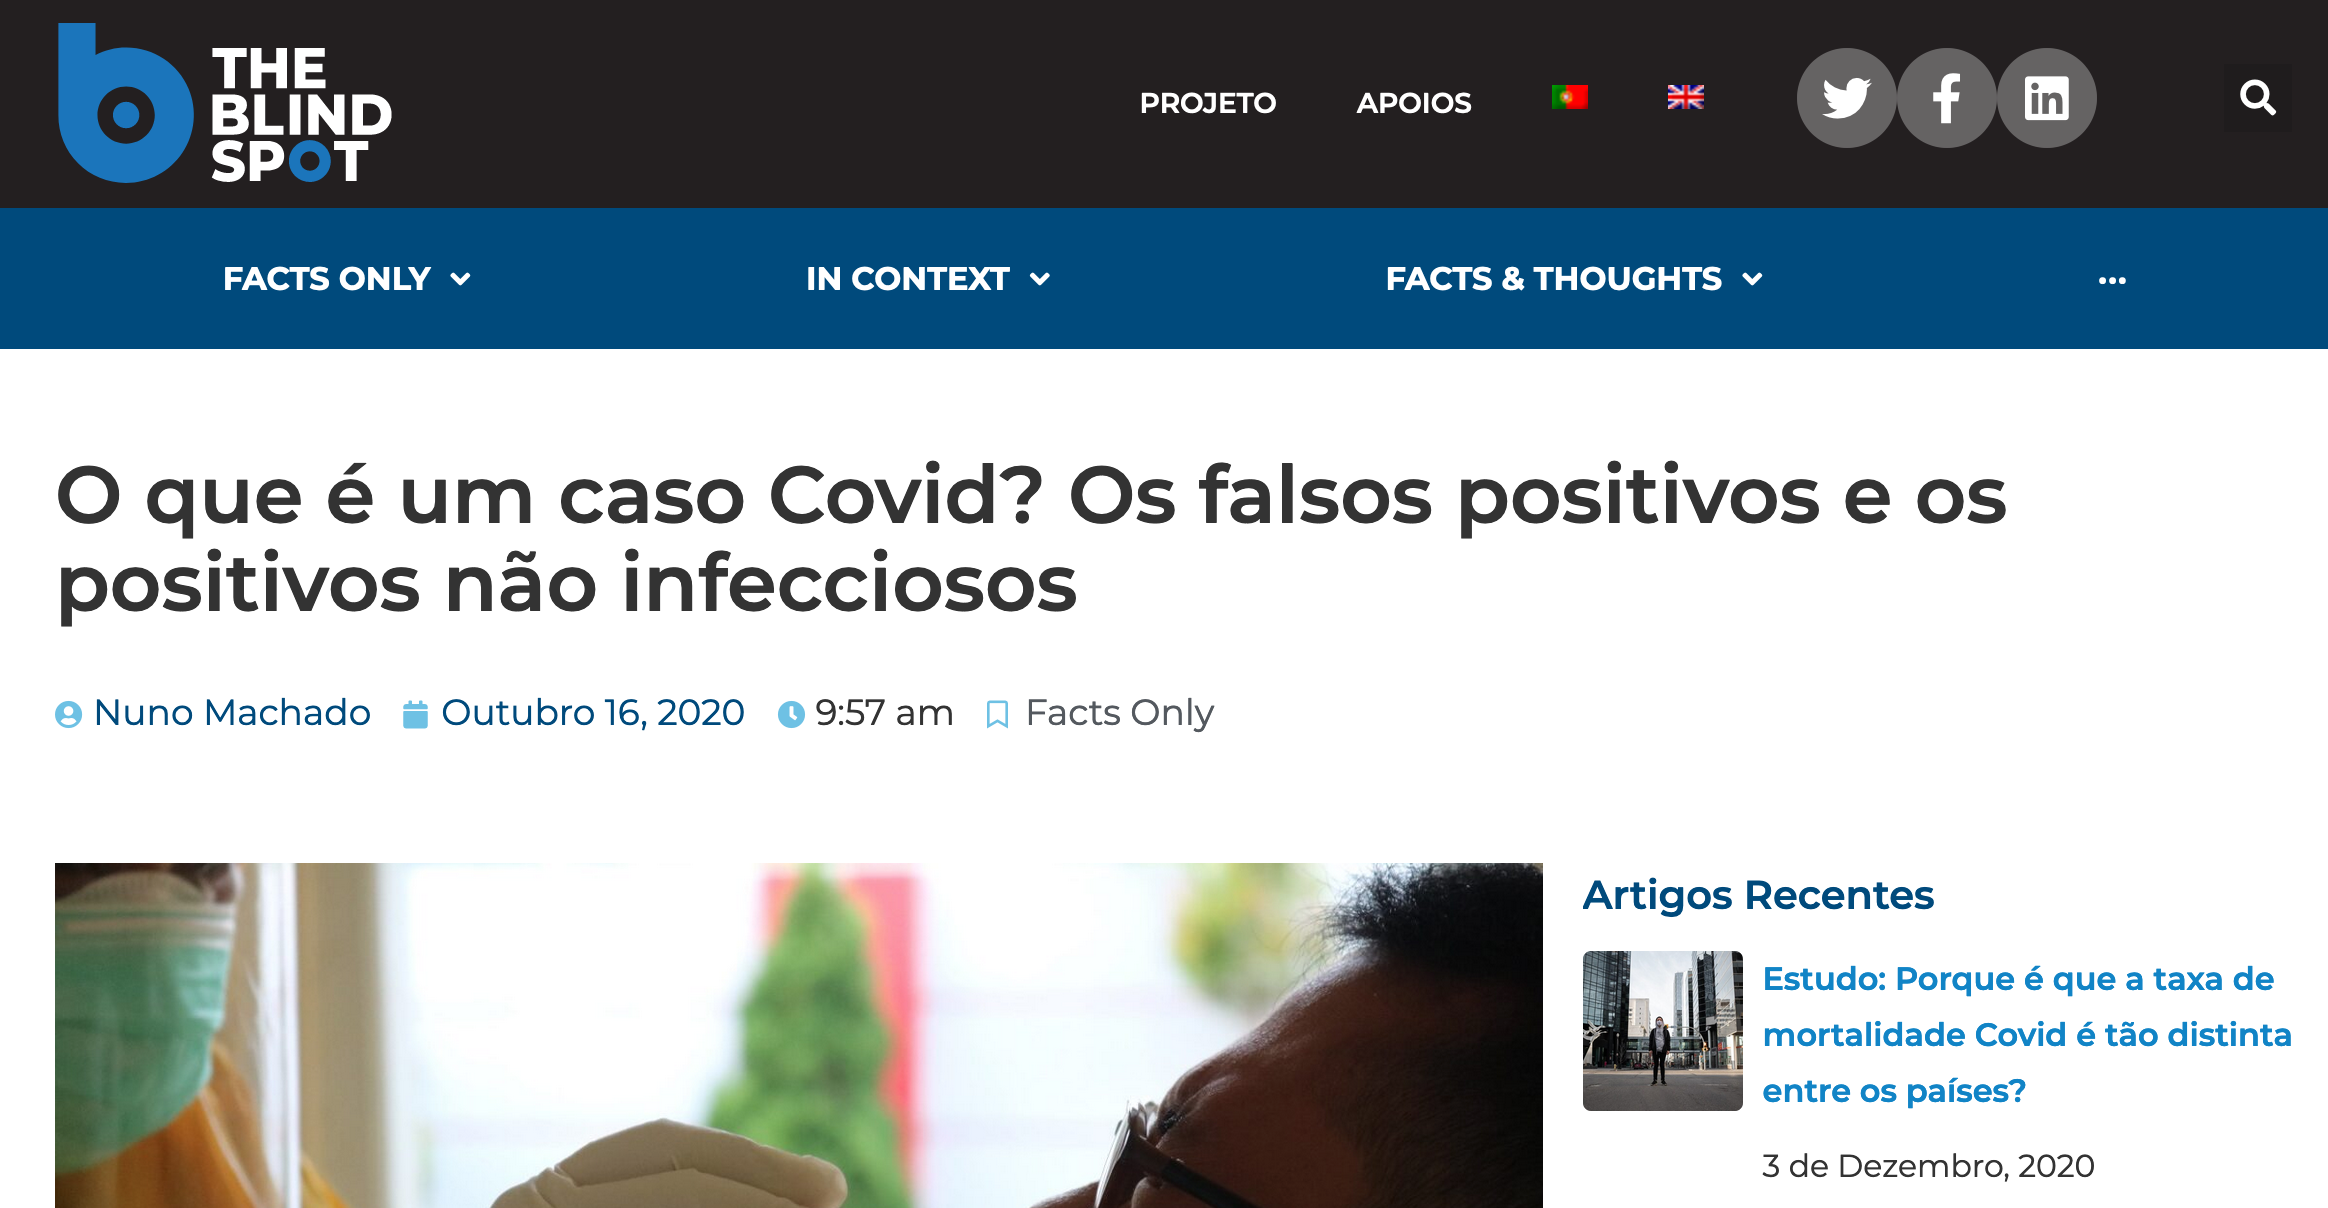 O que é um caso Covid? Os falsos positivos e os positivos não infecciosos